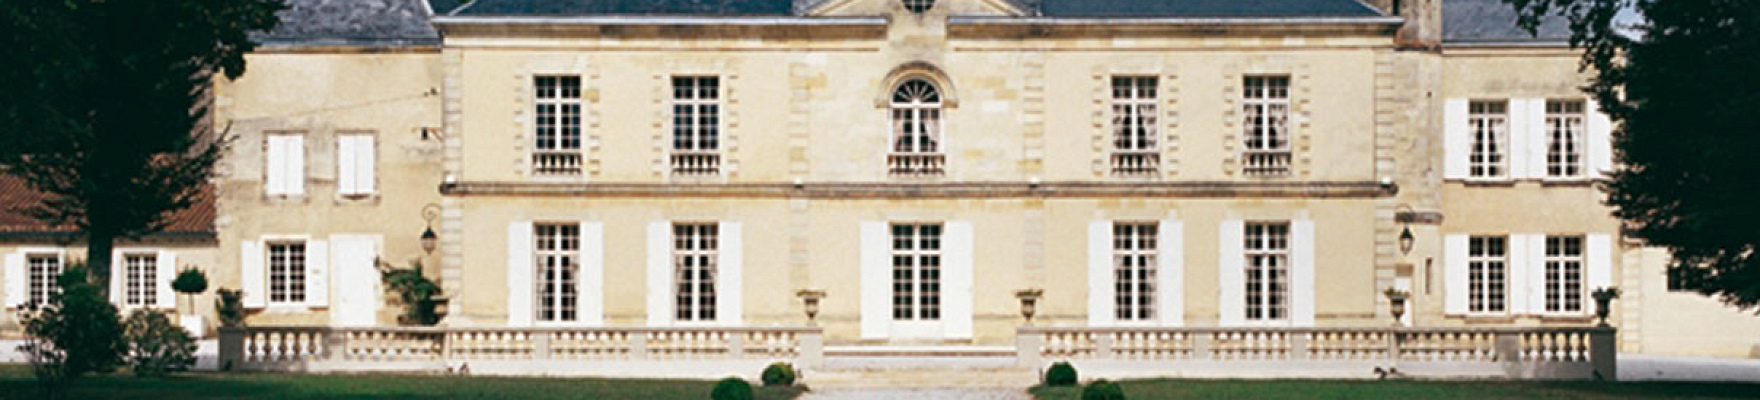 Chateau Lynch-Moussas 